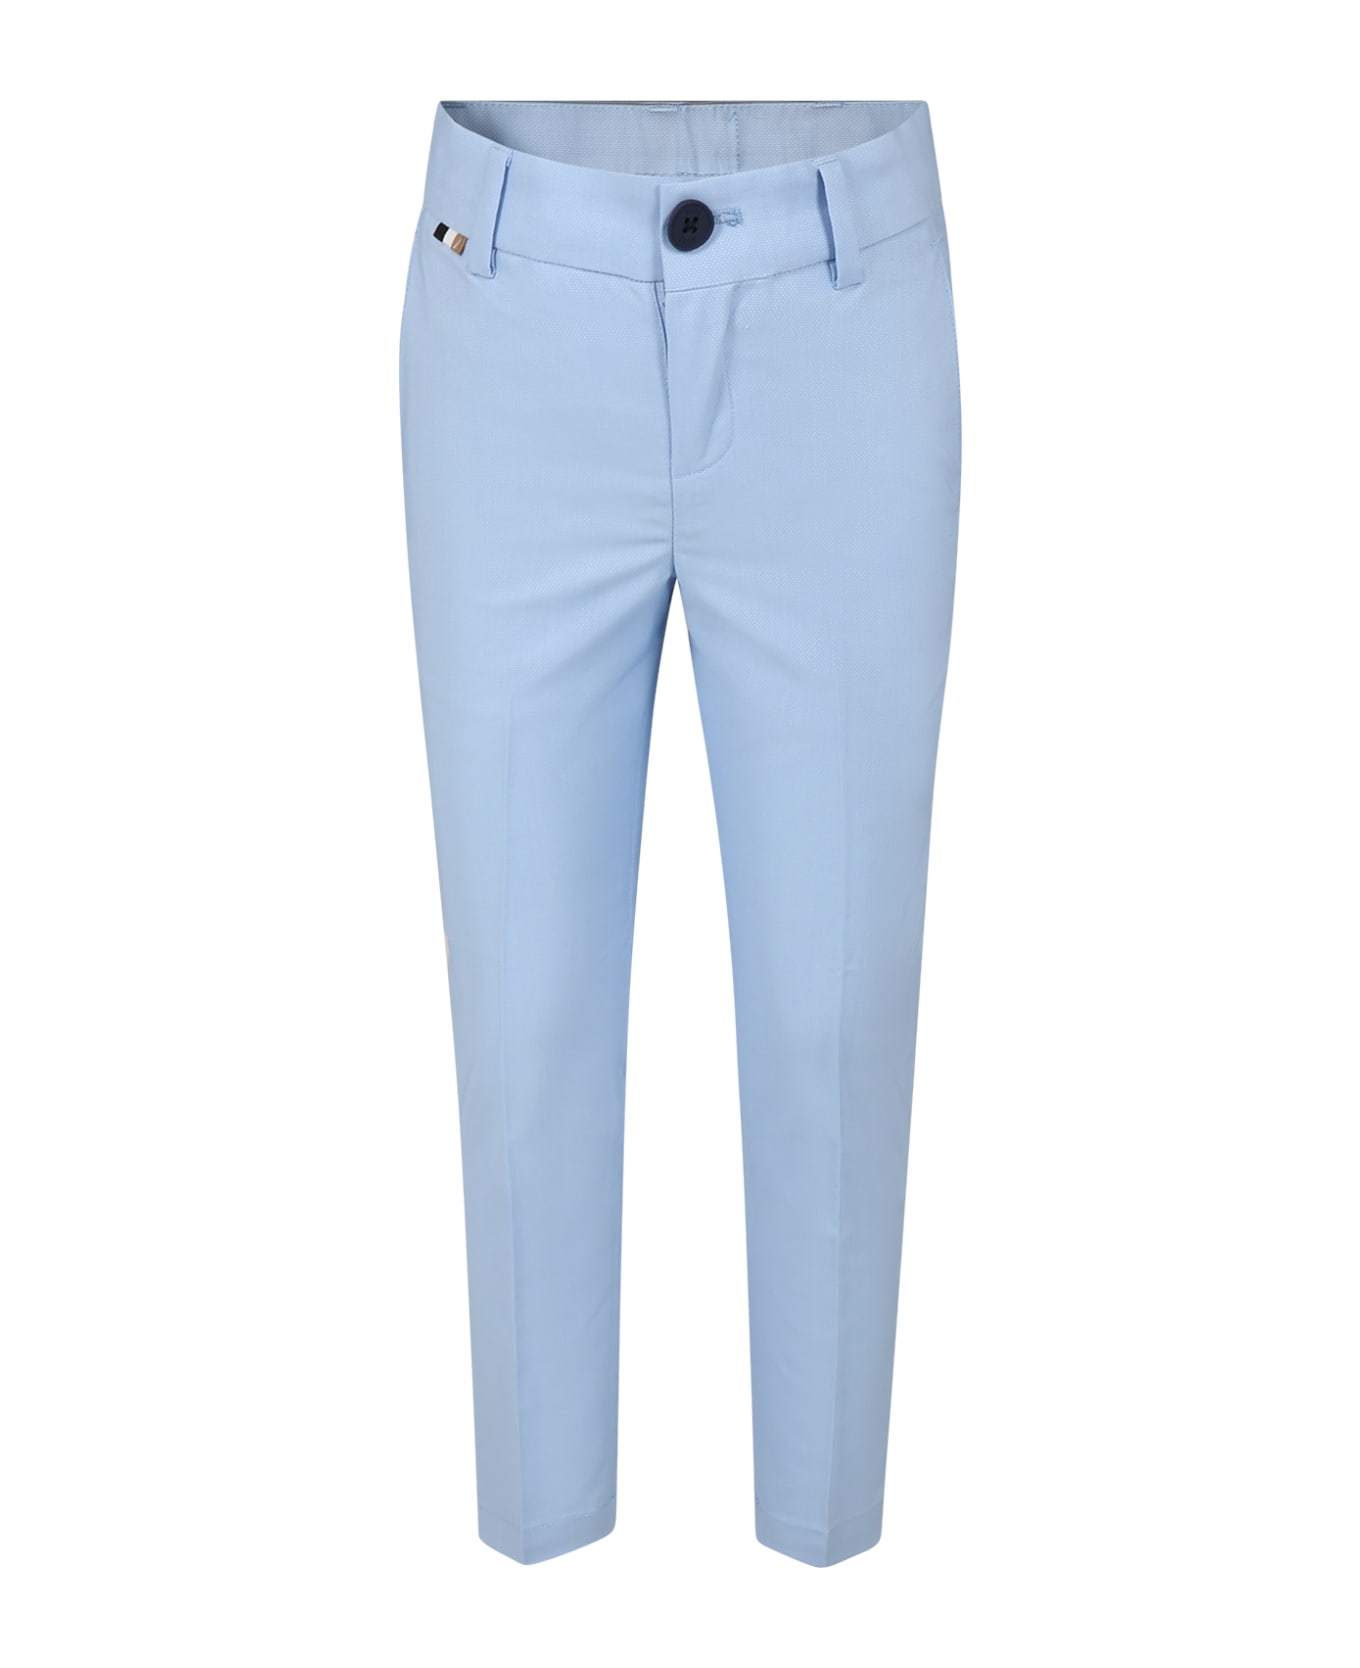 Hugo Boss Elegant Sky Blue Trousers For Boy - Light Blue